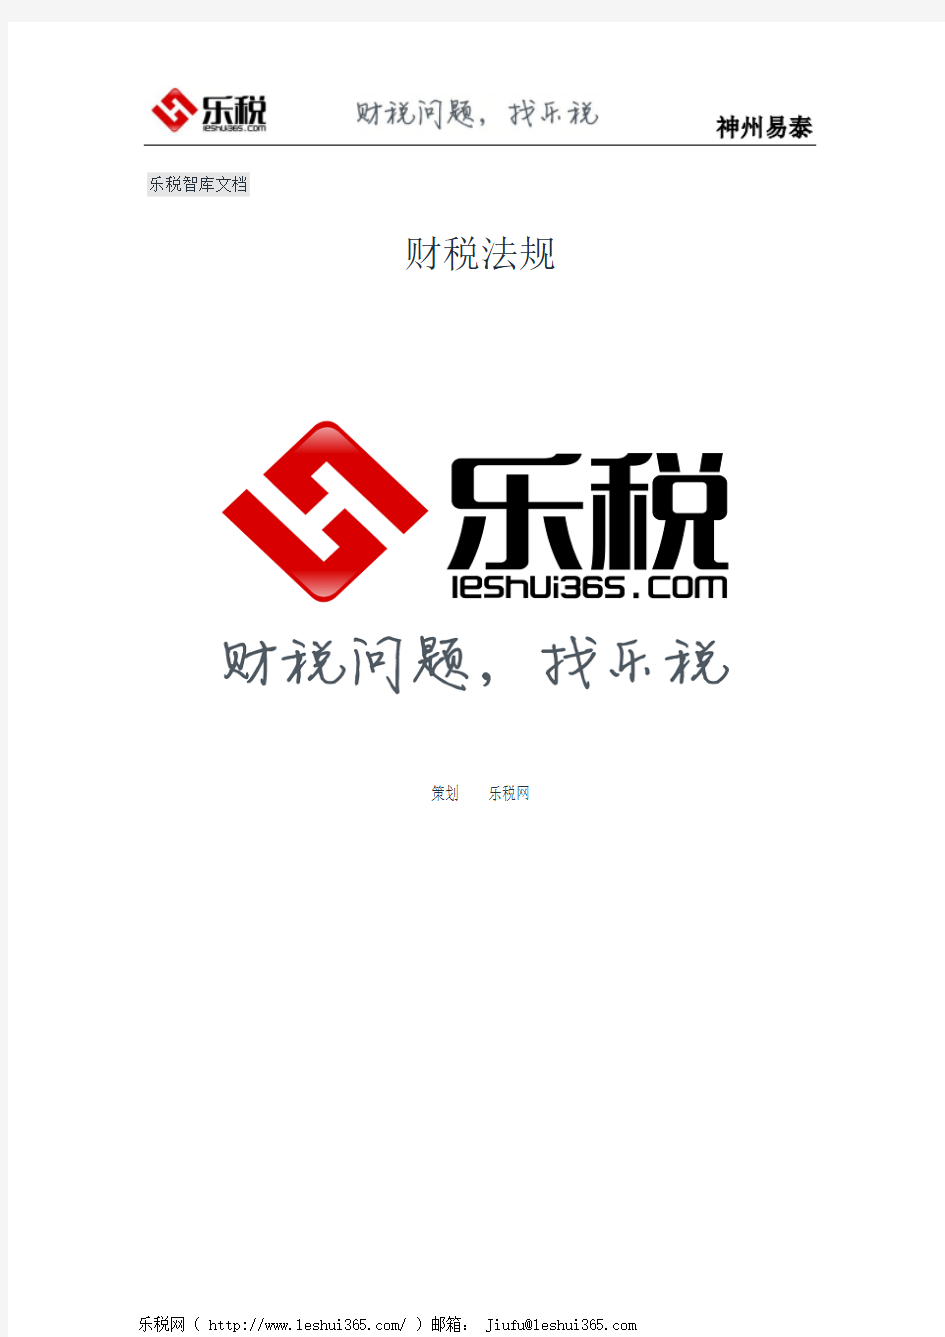 重庆市地方税务局关于个人所得税有关政策问题的通知